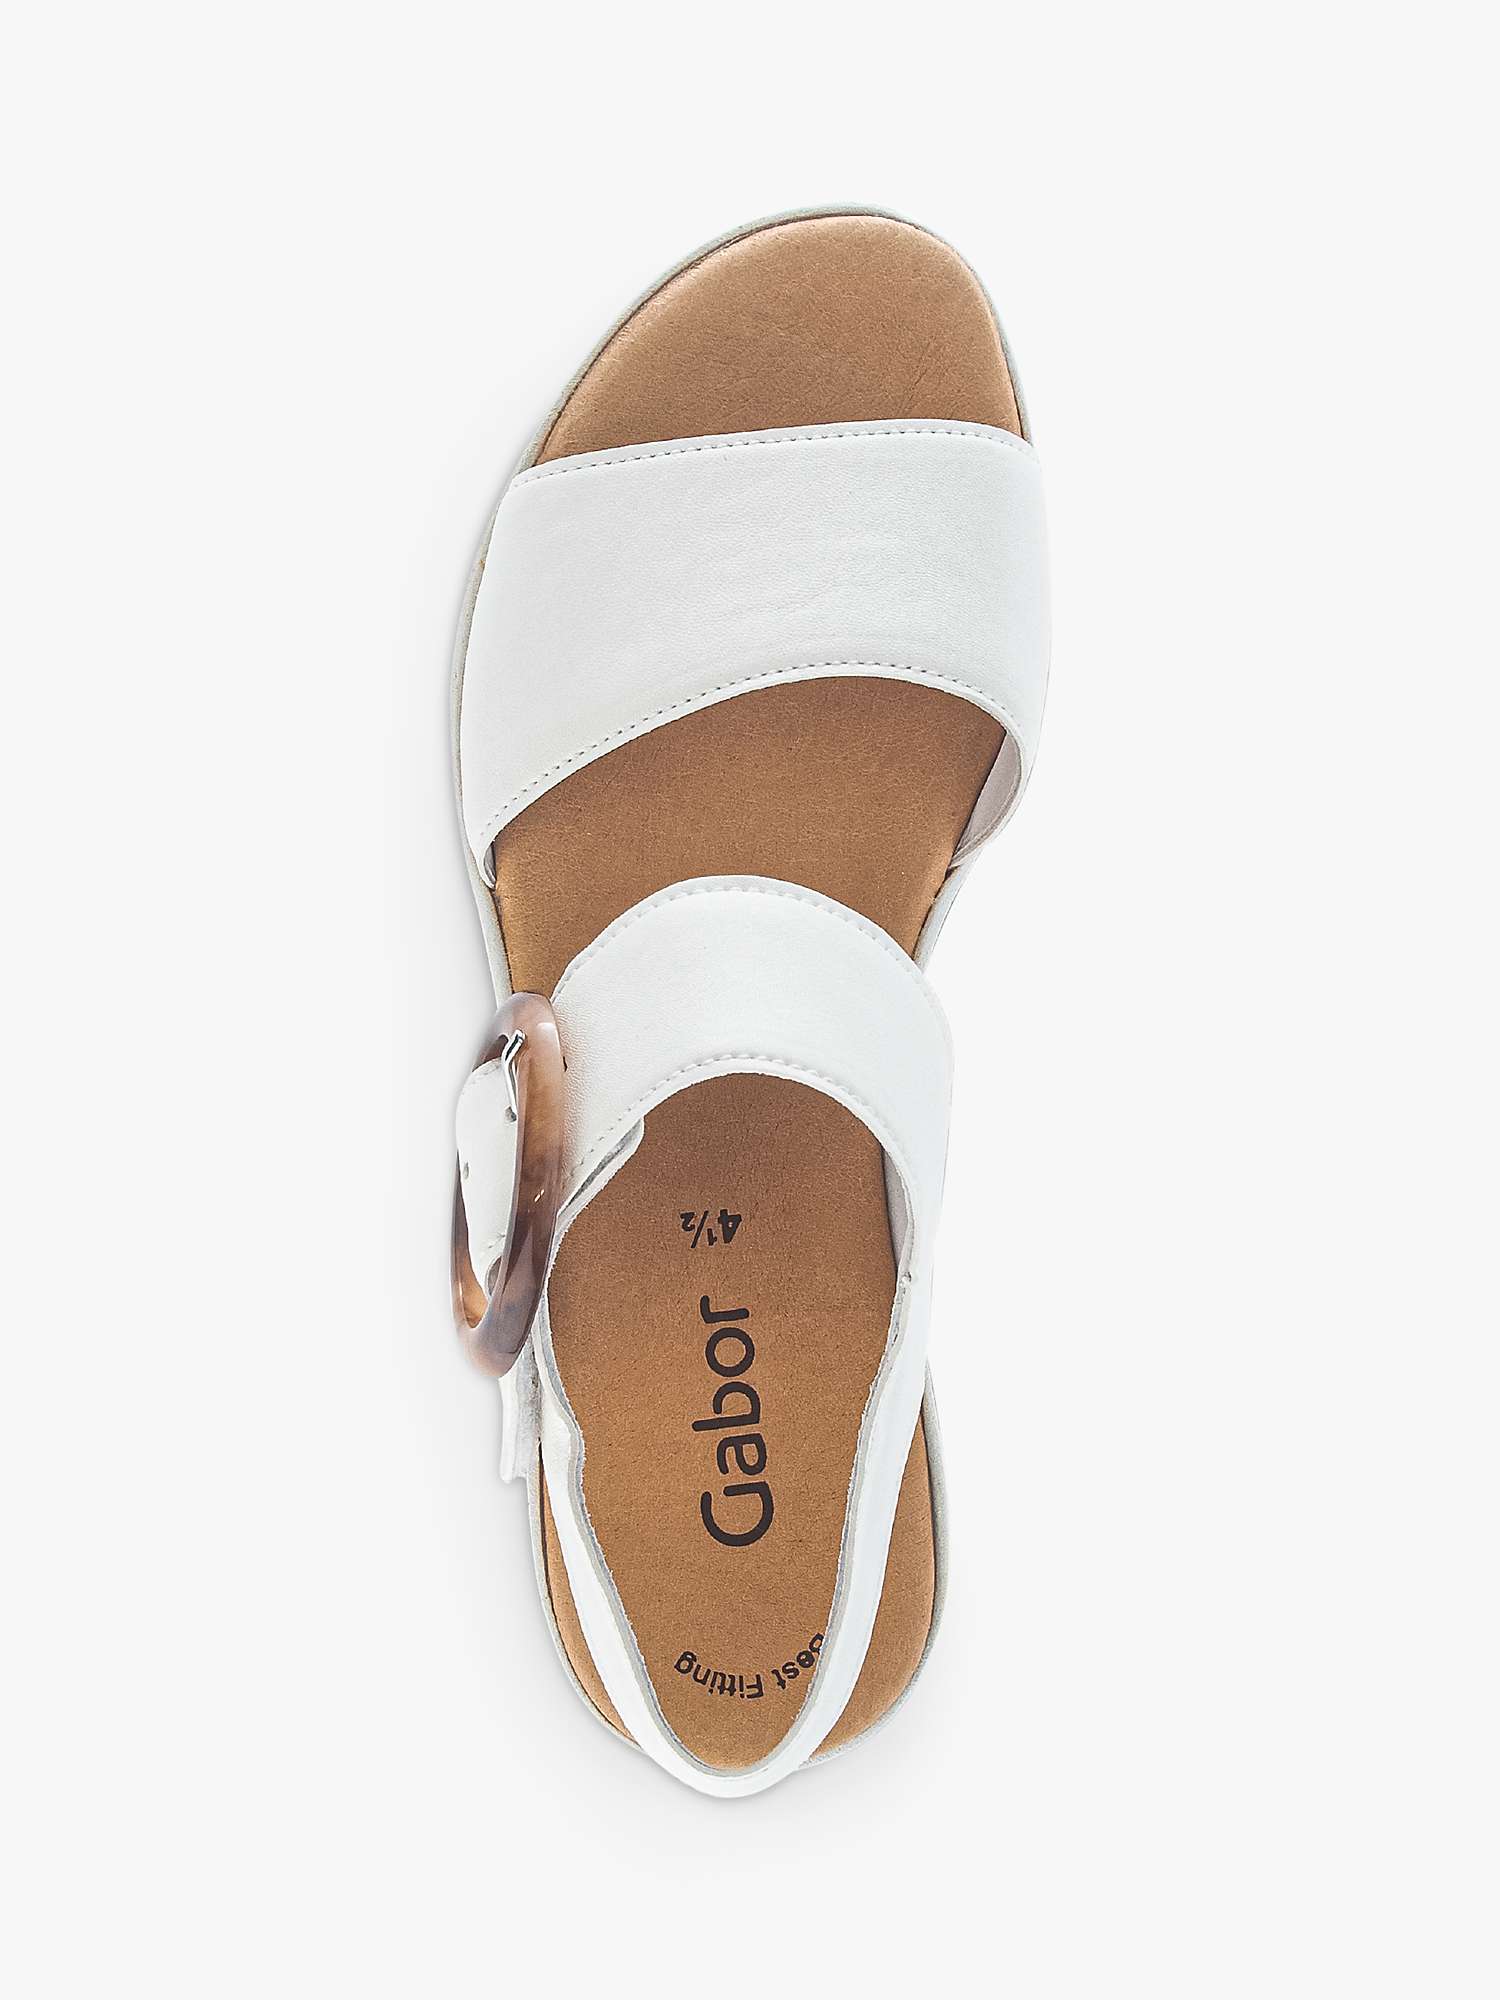 Buy Gabor Andre Platform Wedge Sandals, Latte Online at johnlewis.com